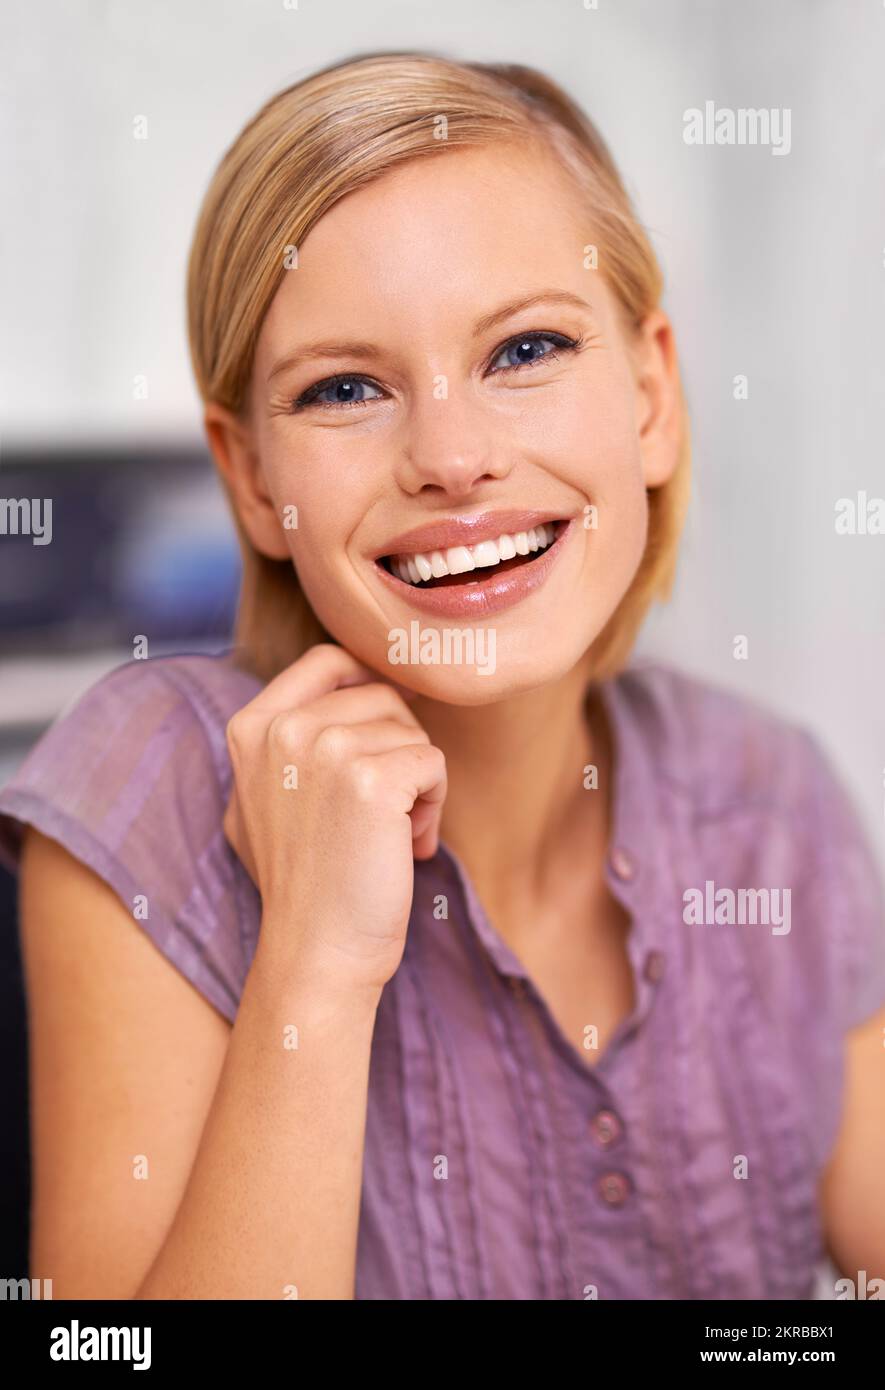 Garder les nerfs à l'épreuve. Portrait d'une jeune femme souriante et attrayante assise à un bureau. Banque D'Images